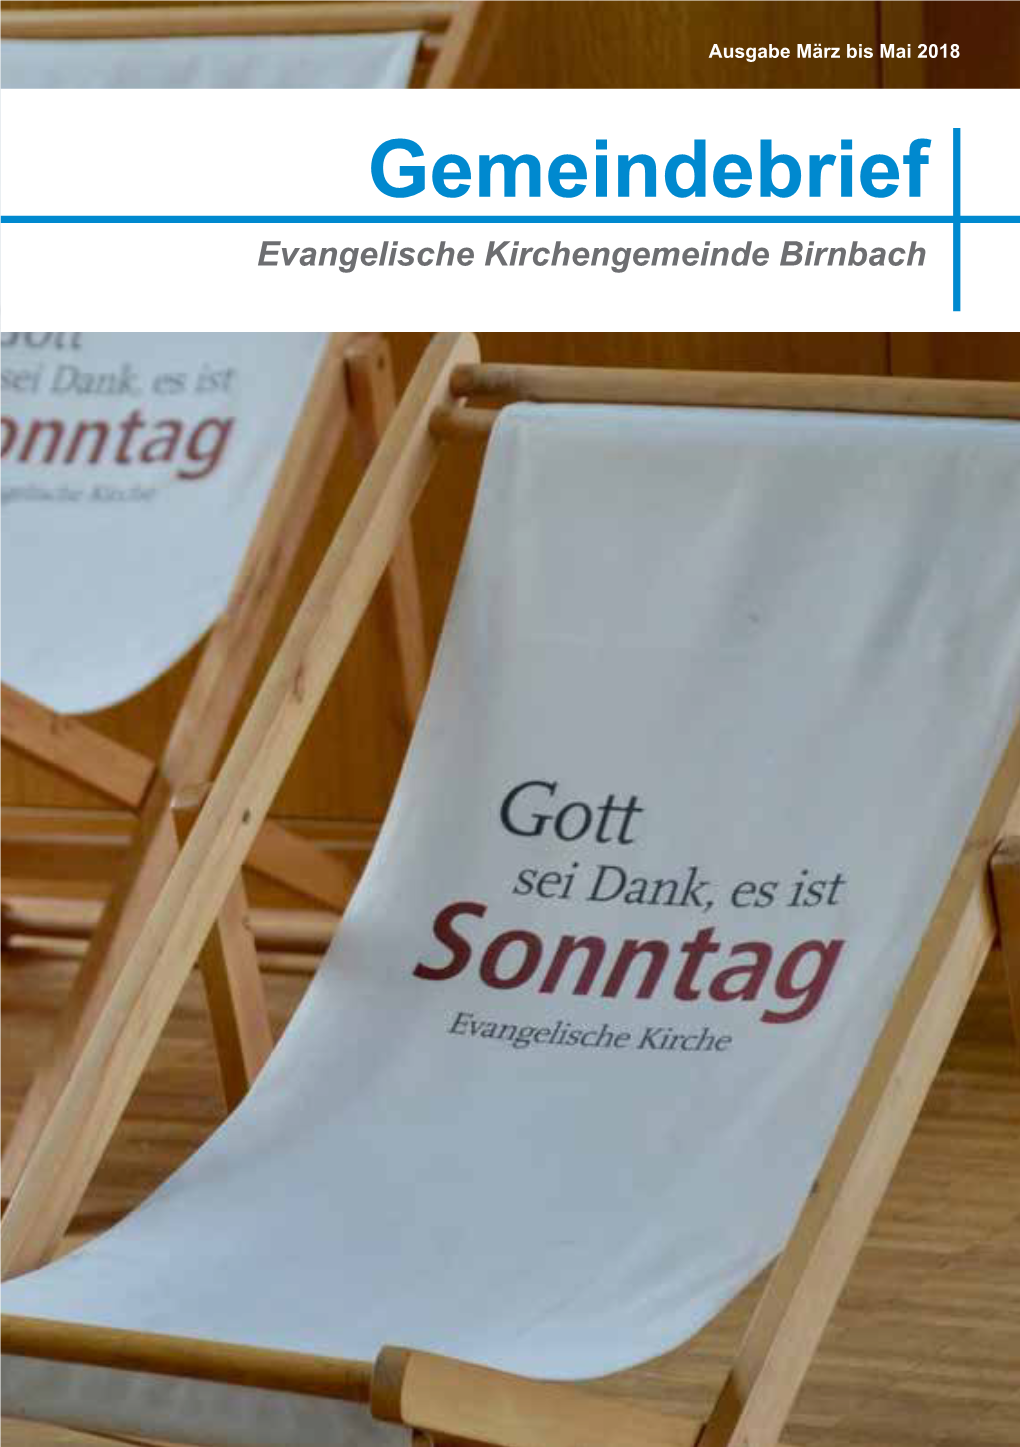 Gemeindebrief Evangelische Kirchengemeinde Birnbach 2